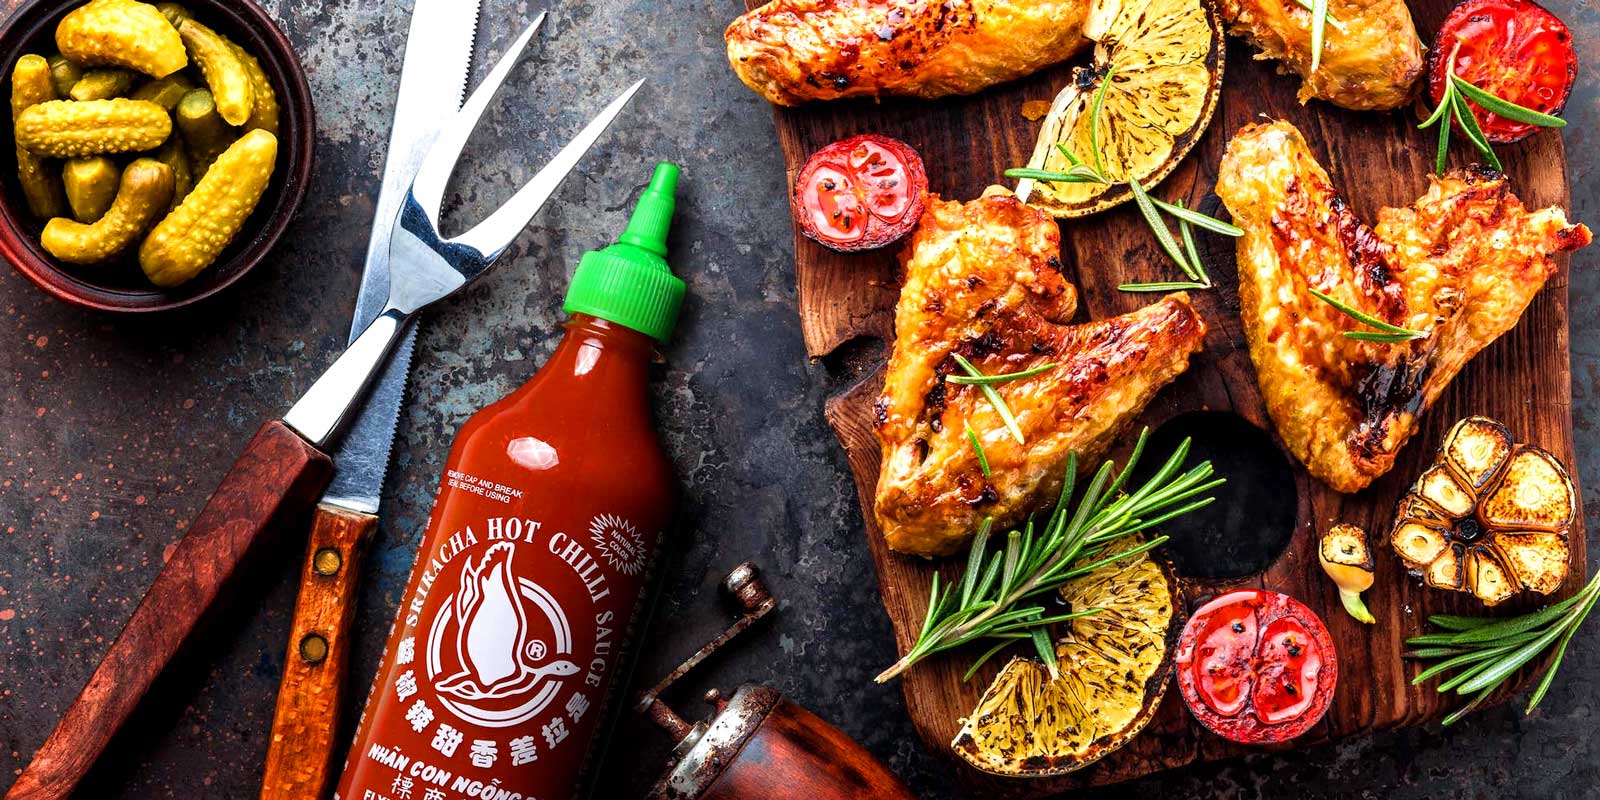 Sriracha szoszok a Flying Goose-tol 1999-ben indult premium thai szoszmarkank, a Flying Goose azzal a cellal, hogy emelje a csipos szoszok szinvonalat, es az inyenceknek a leheto legmagasabb szintu izt biztositsa, hogy kiegeszitse mindenfele finom csemeget.